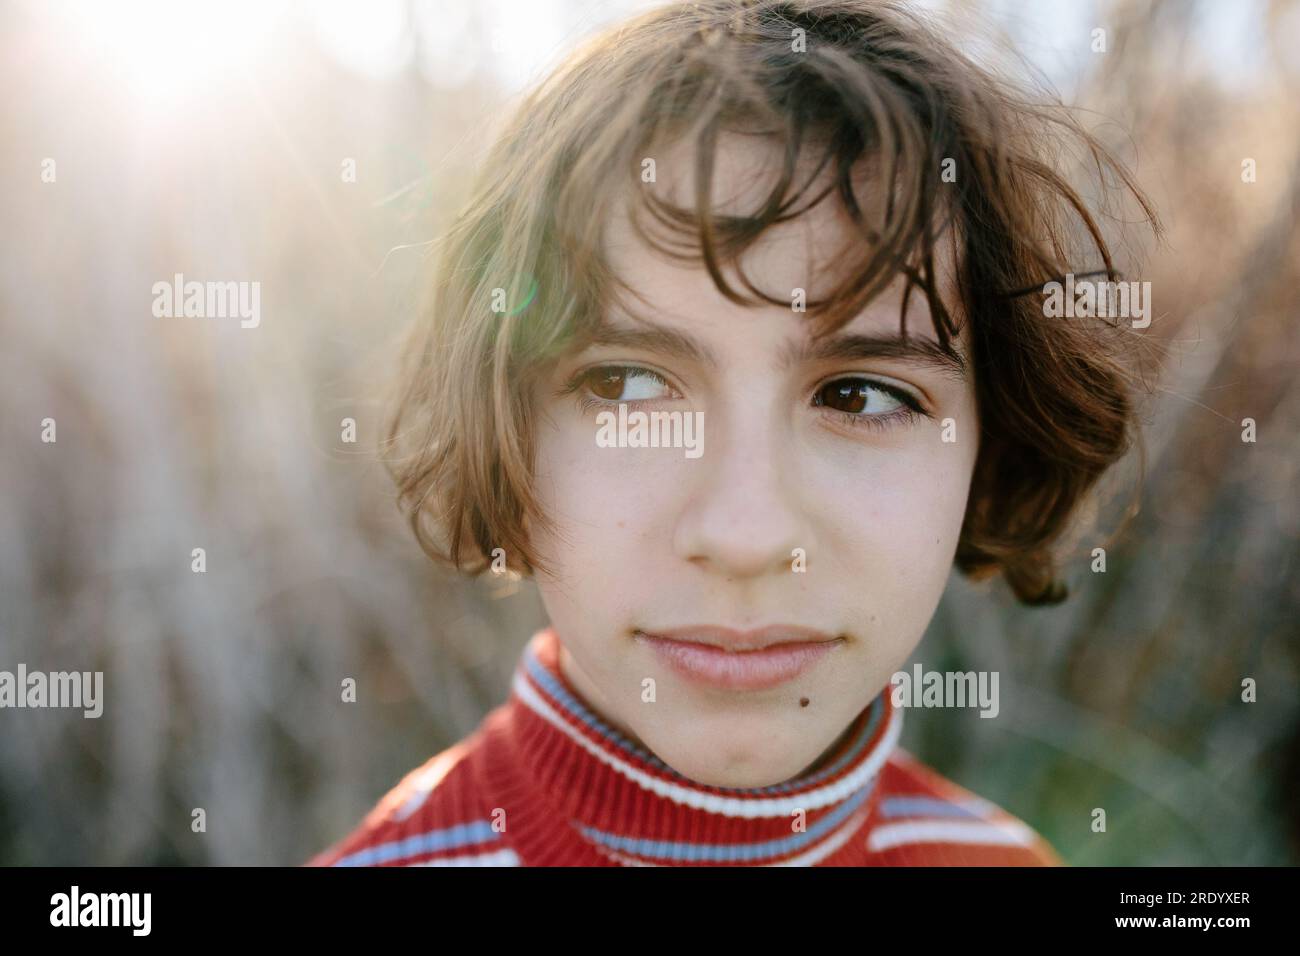 Portrait en gros plan d'une jeune adolescente avec un regard de côté Banque D'Images